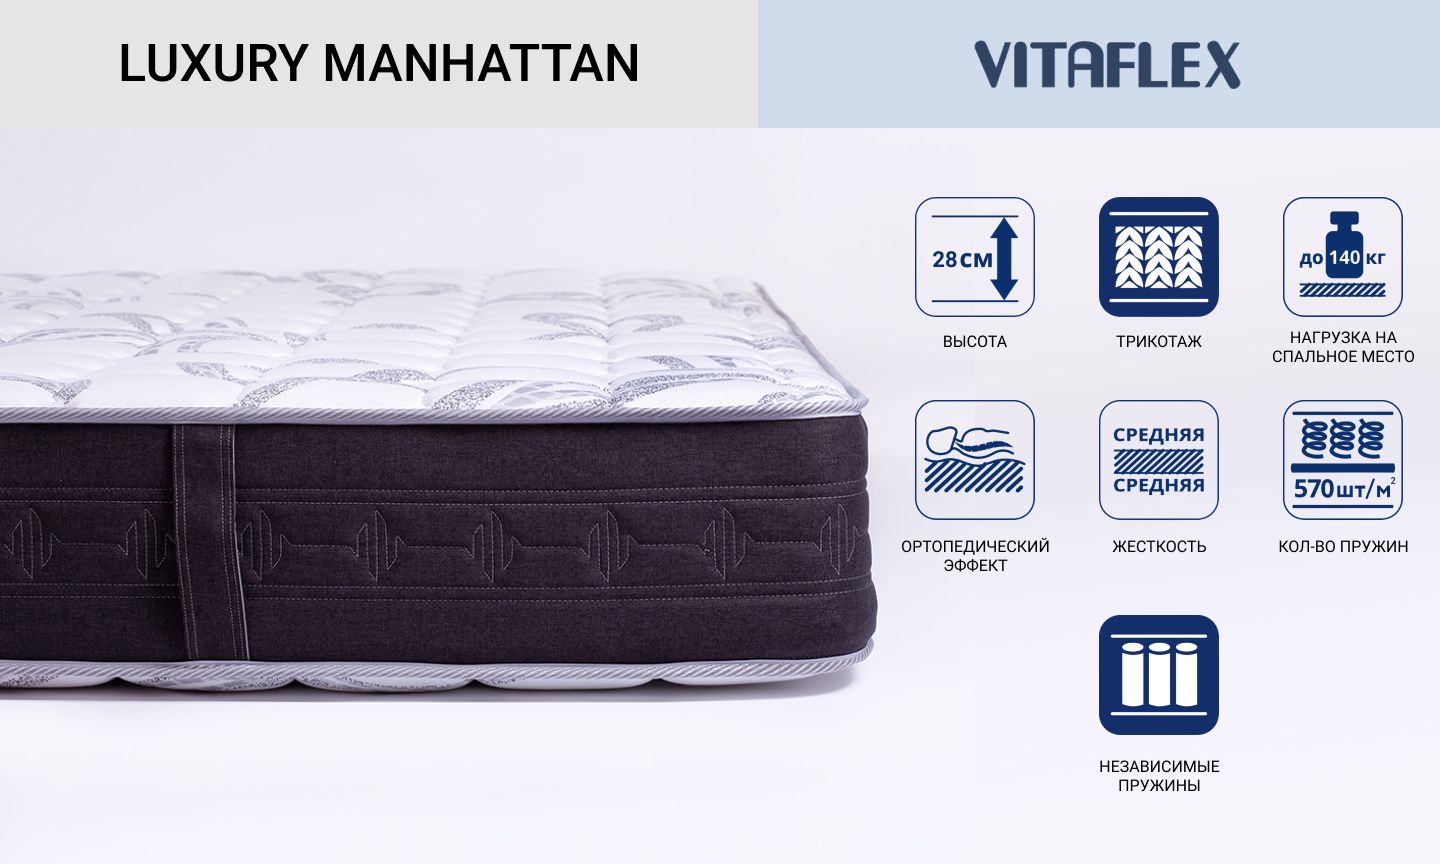 Двухсторонний матрас Vitaflex серии Luxury Manhattan с независимыми пружинами